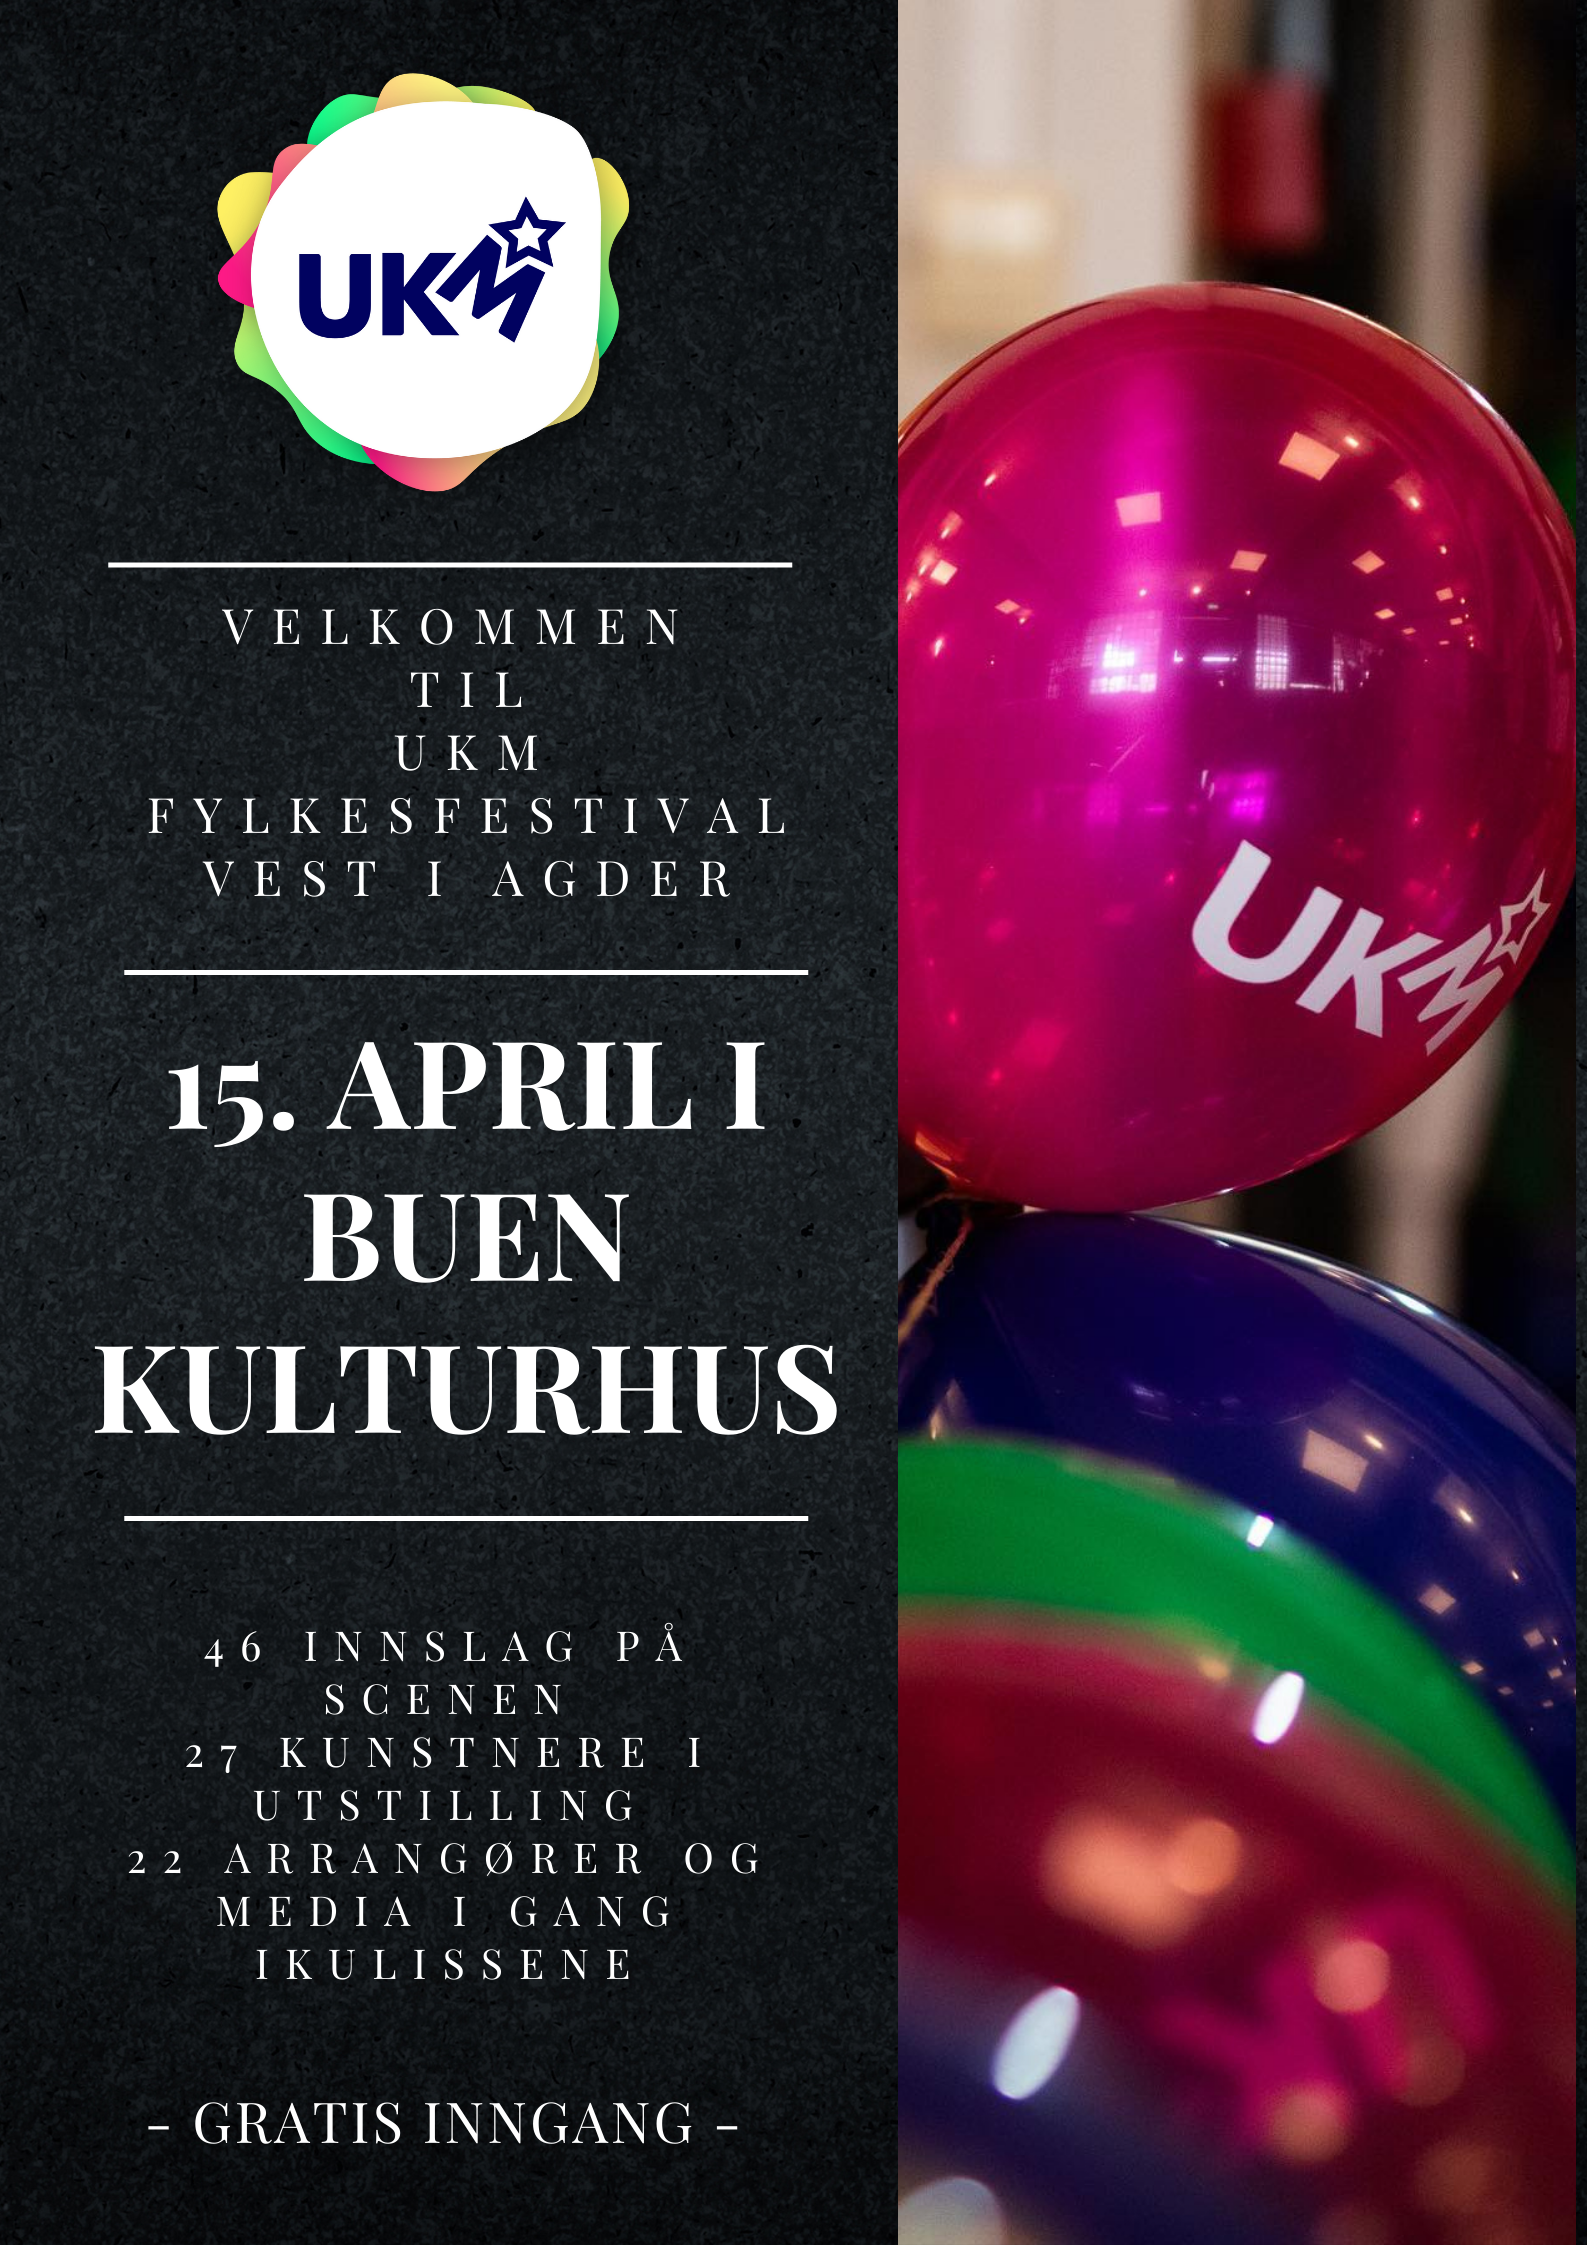 UKM fylkesfestival invitasjon med ballonger